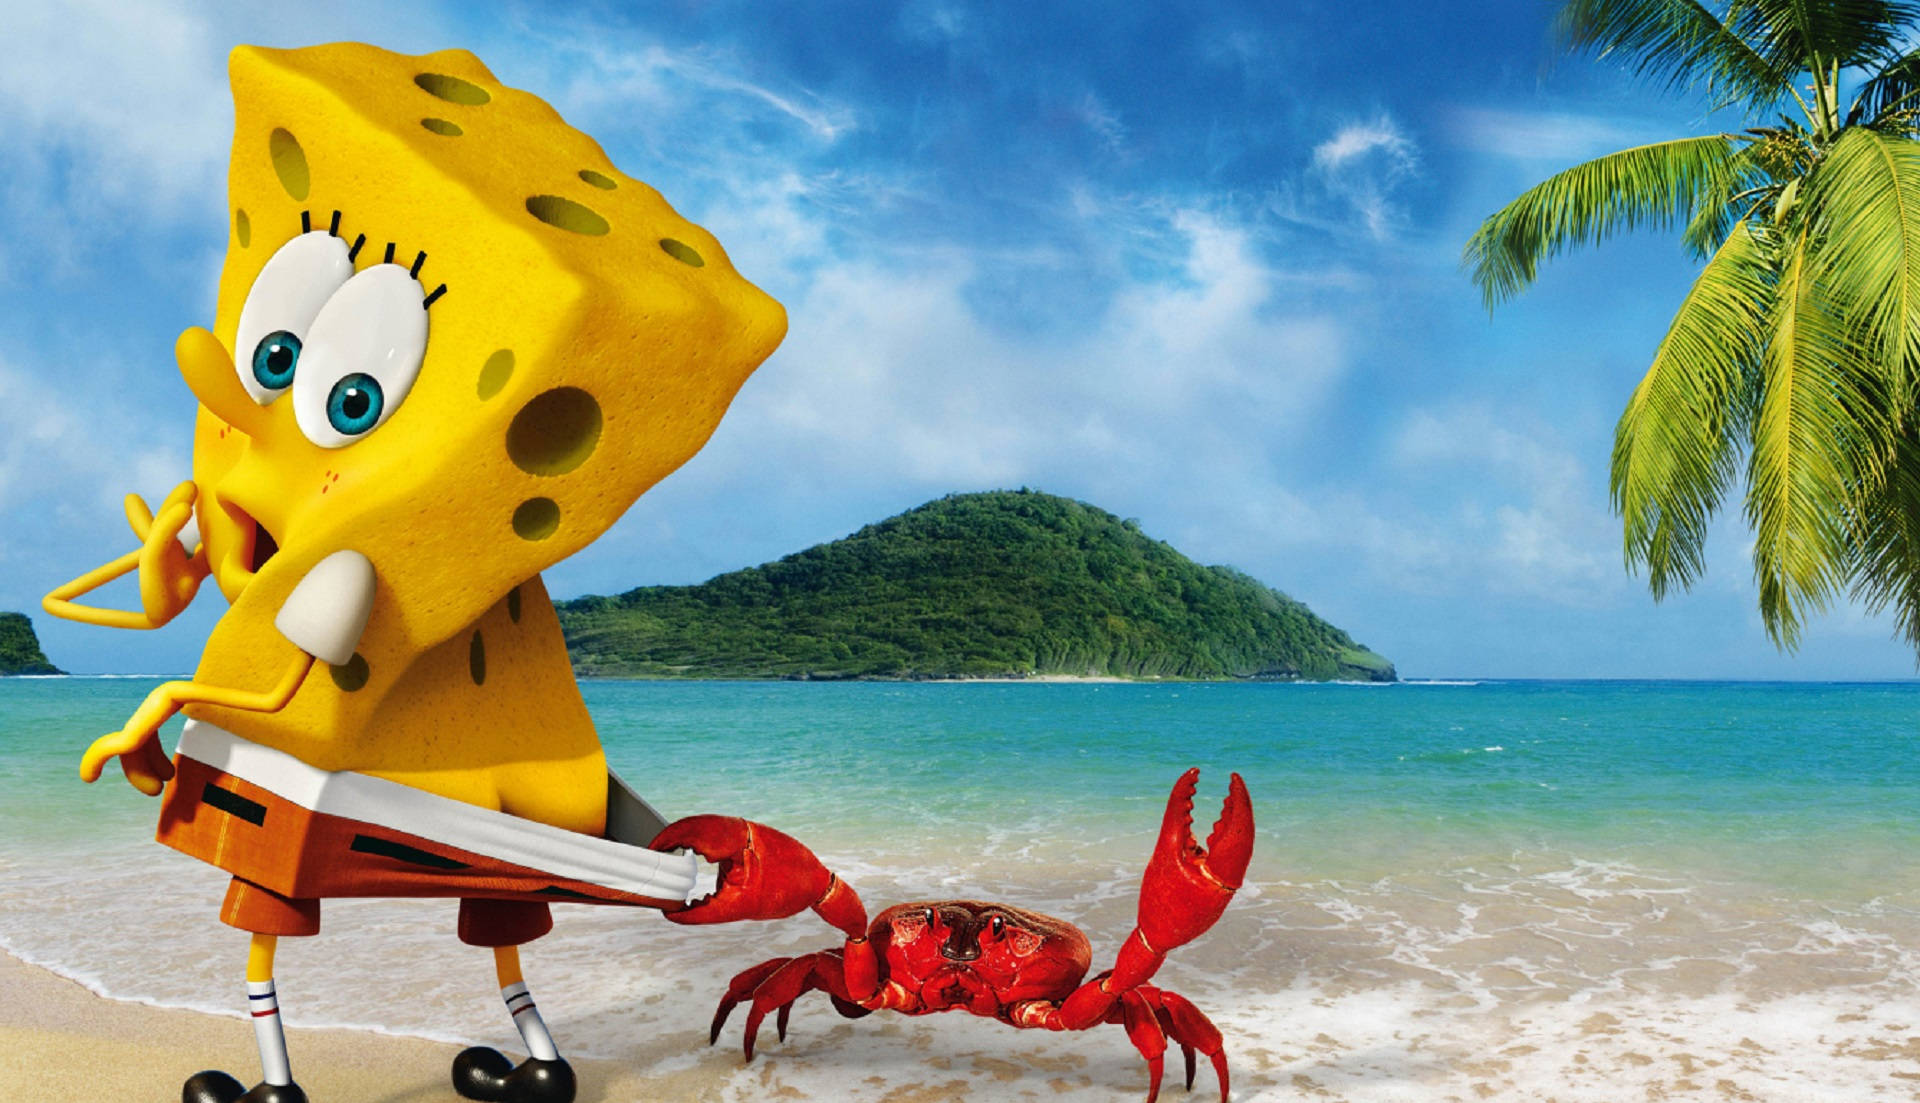 Spongebob And A Crab Wallpaper